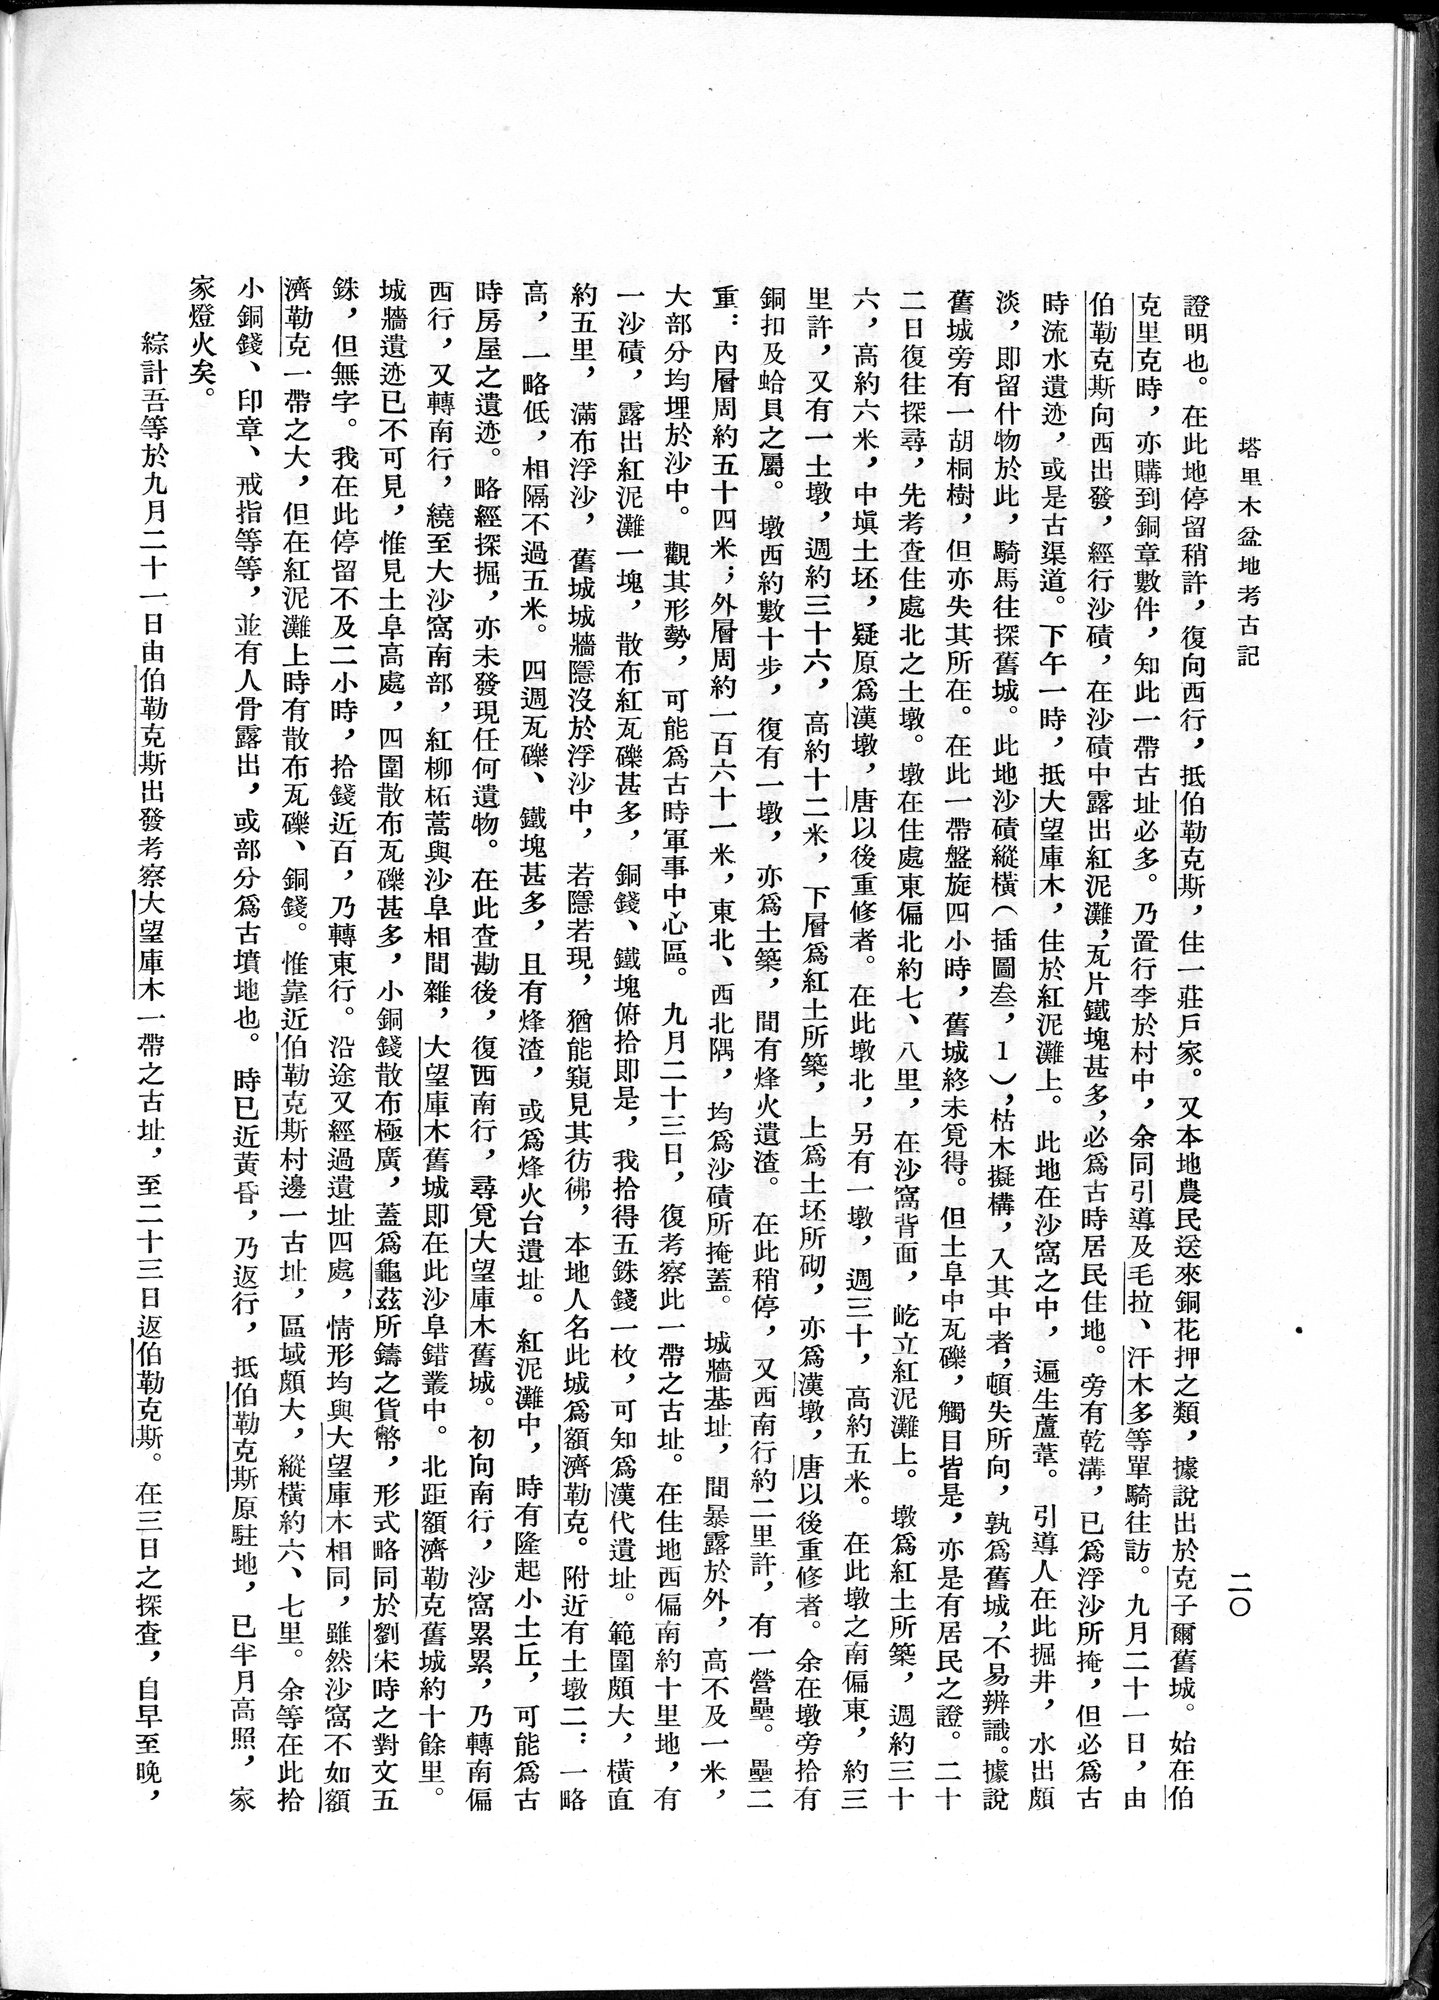 塔里木盆地考古記 : vol.1 / Page 44 (Grayscale High Resolution Image)